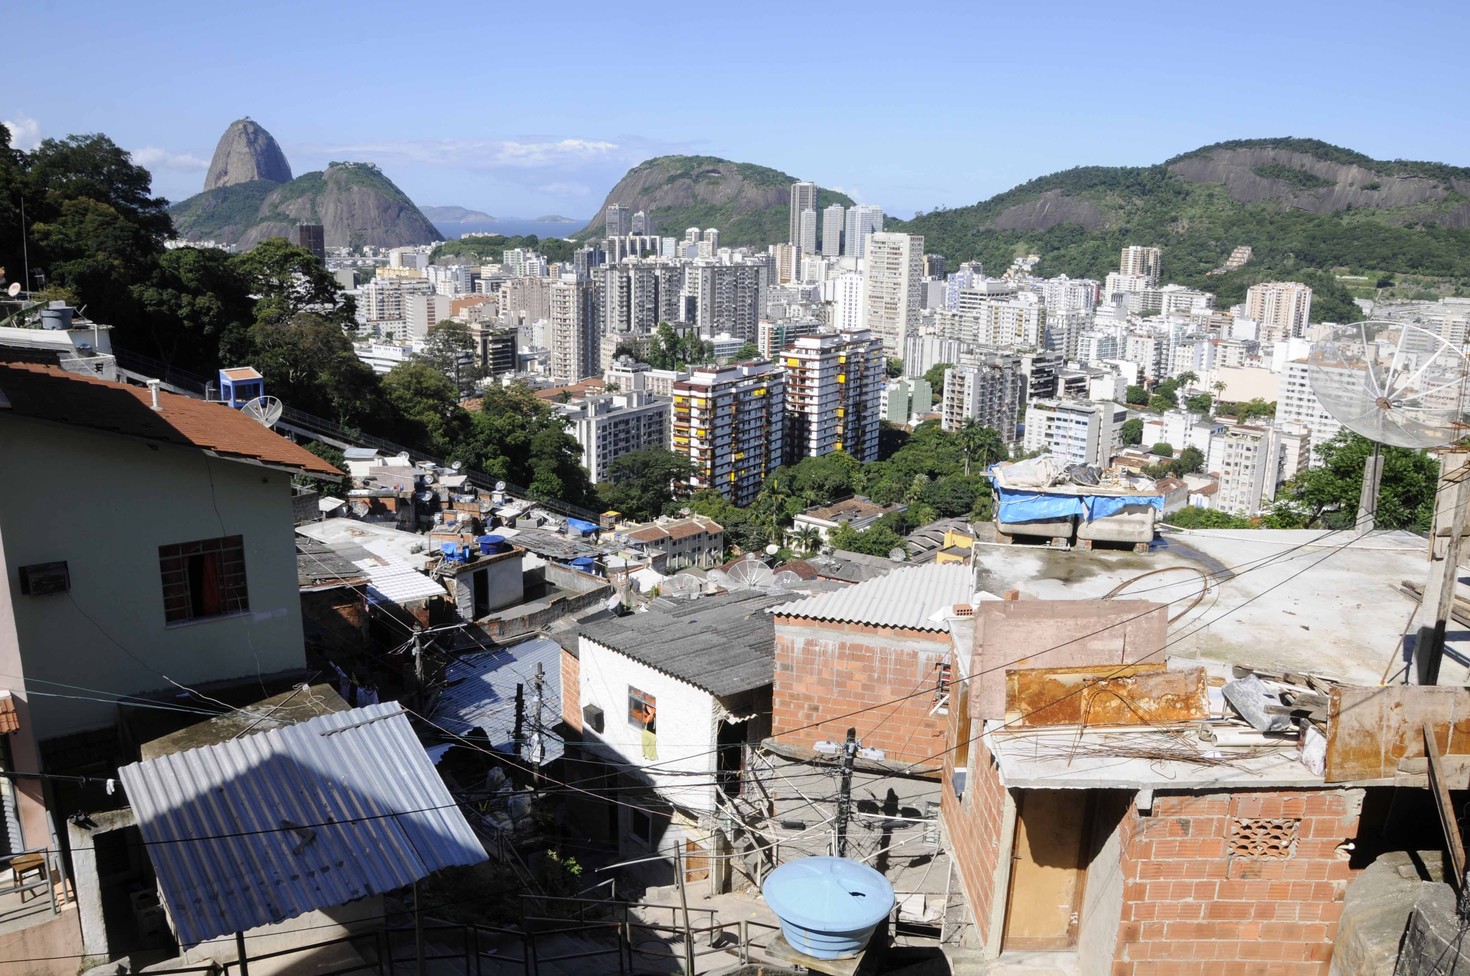 Panorámica de un barrio de favelas en Río de Janeiro con los edificios de la ciudad al fondo en claro contraste.